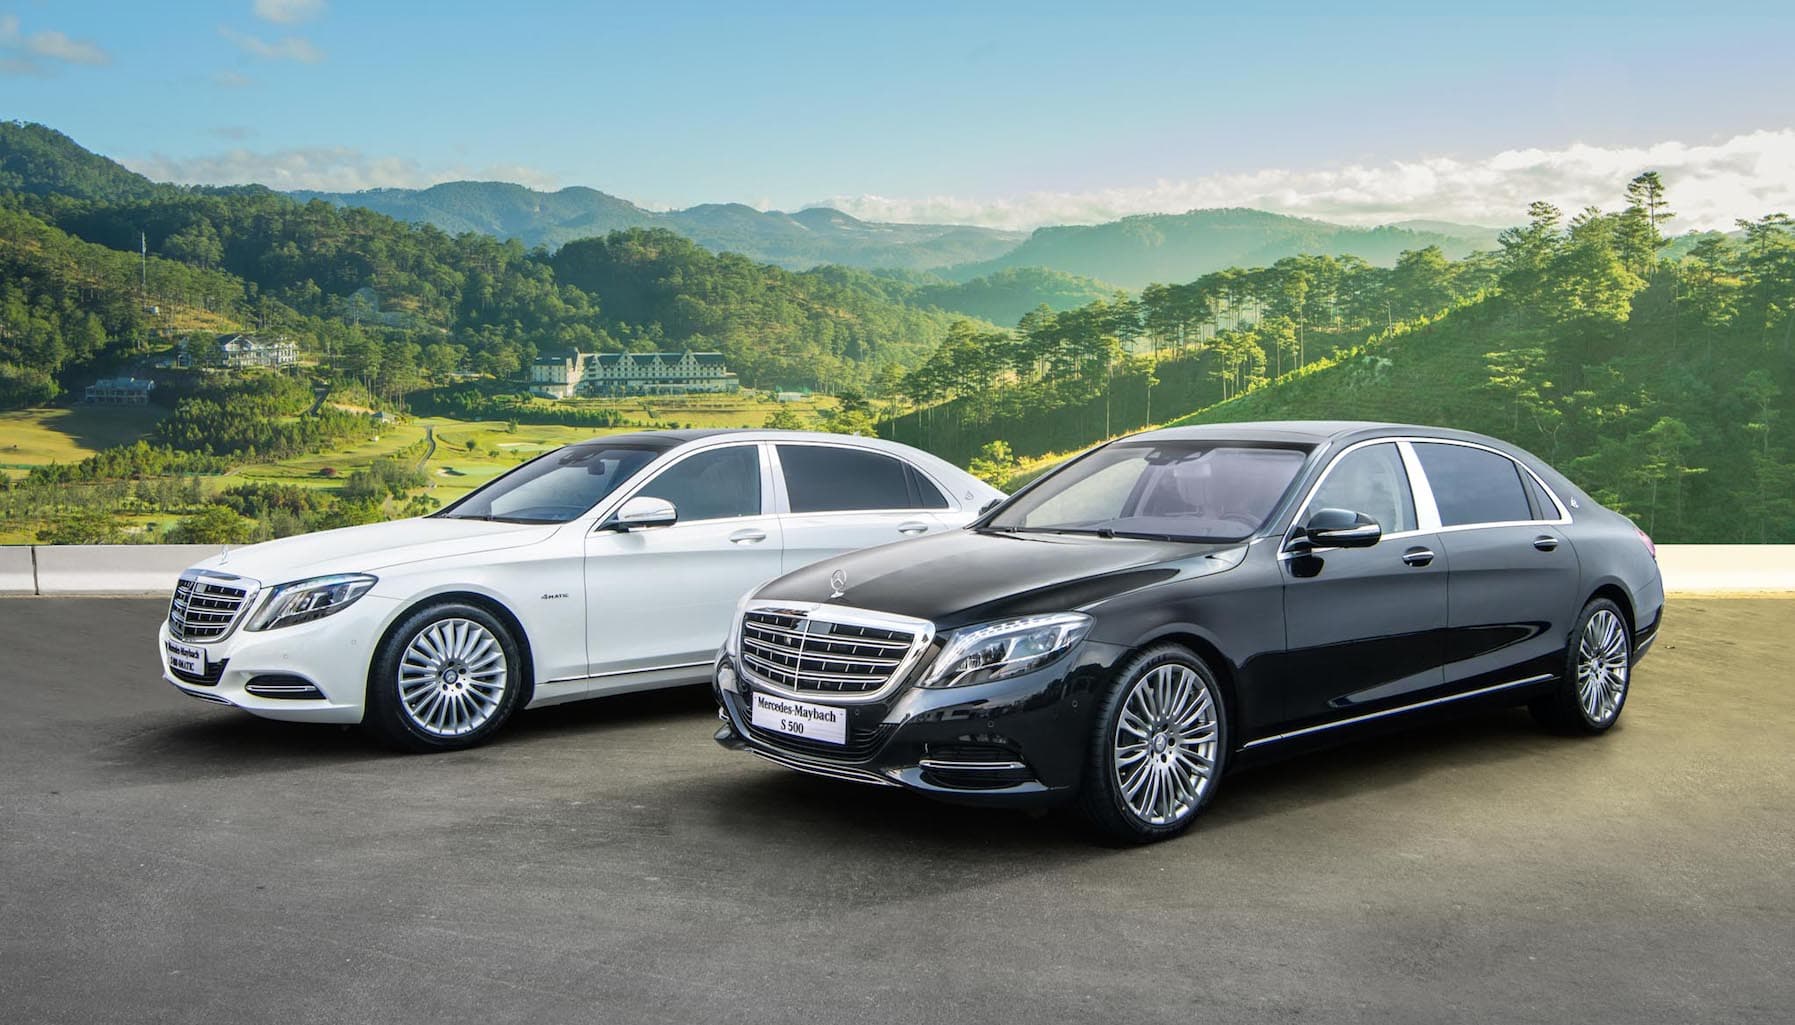 Bộ đôi Mercedes-Maybach khẳng định đẳng cấp xe siêu sang